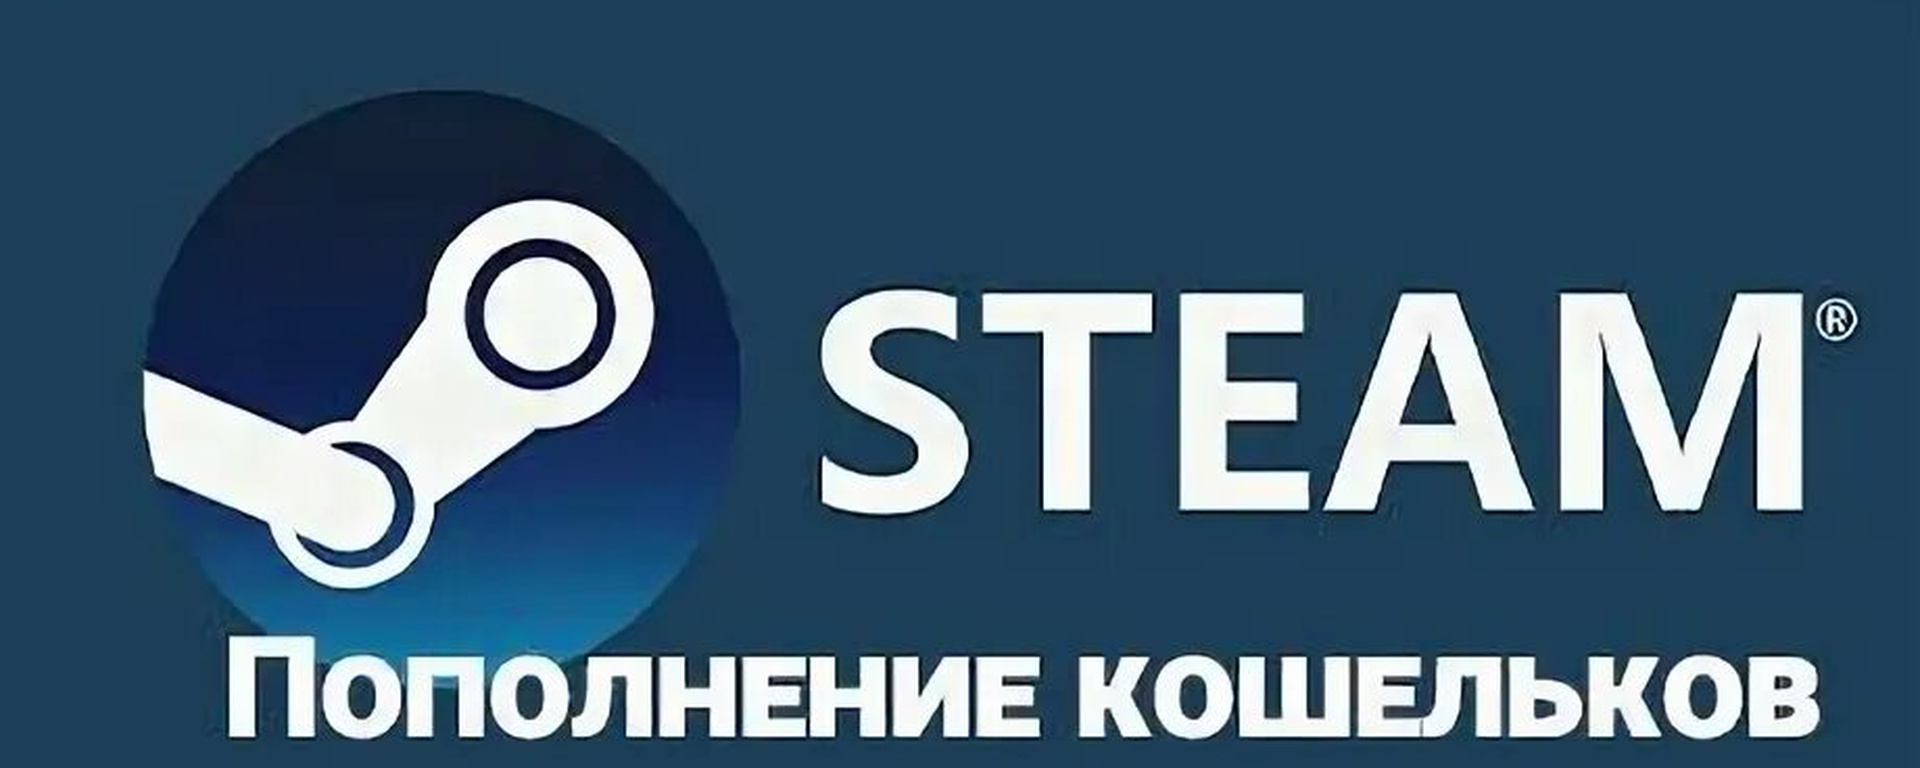 Steam до 20 рублей фото 24